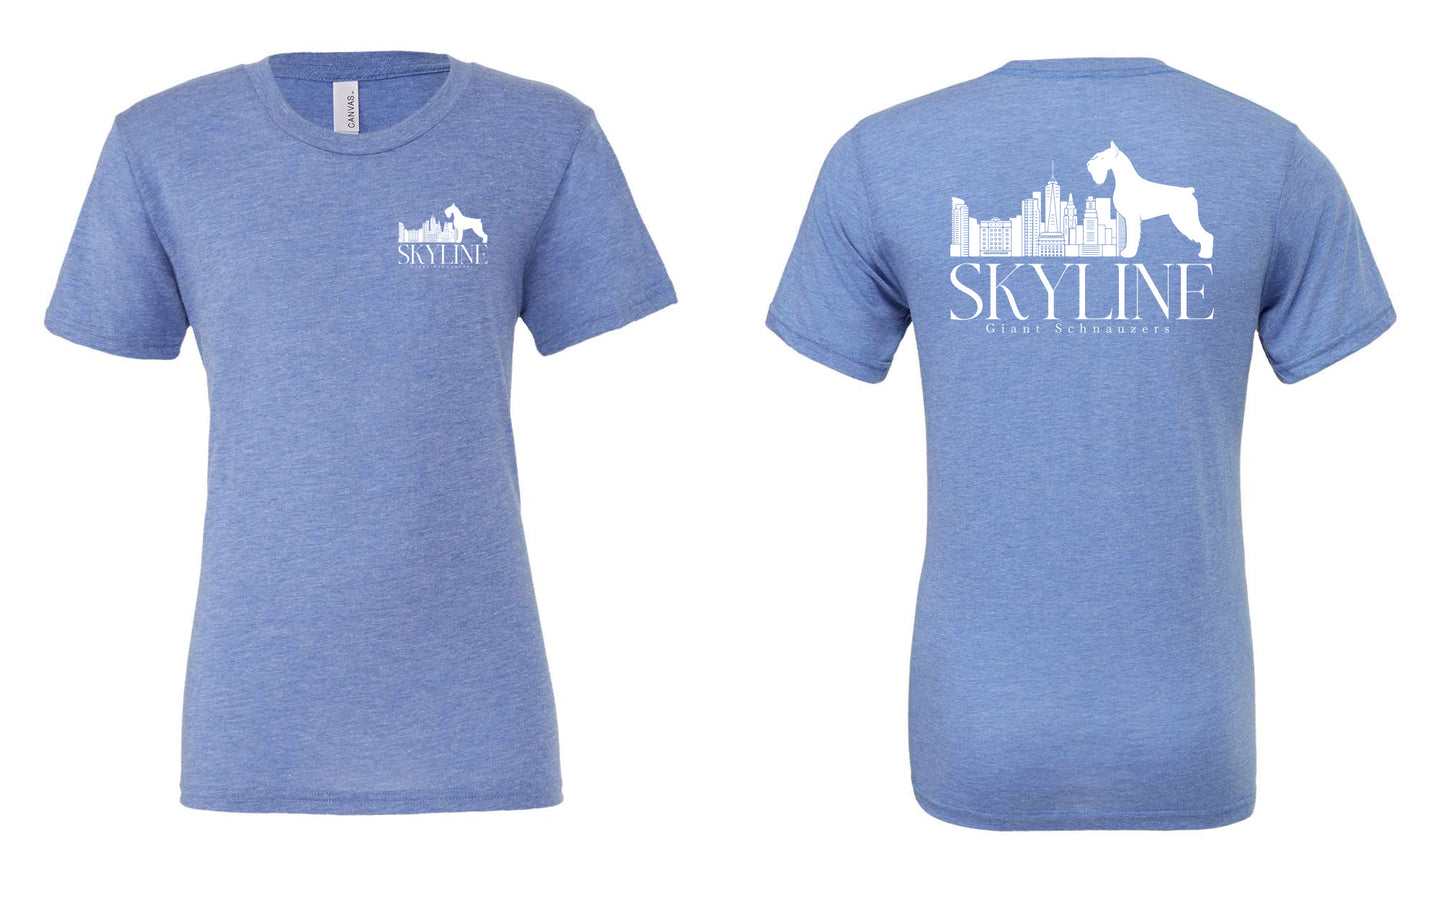 Skyline Giant Schnauzers Blue Triblend Tee - 3413